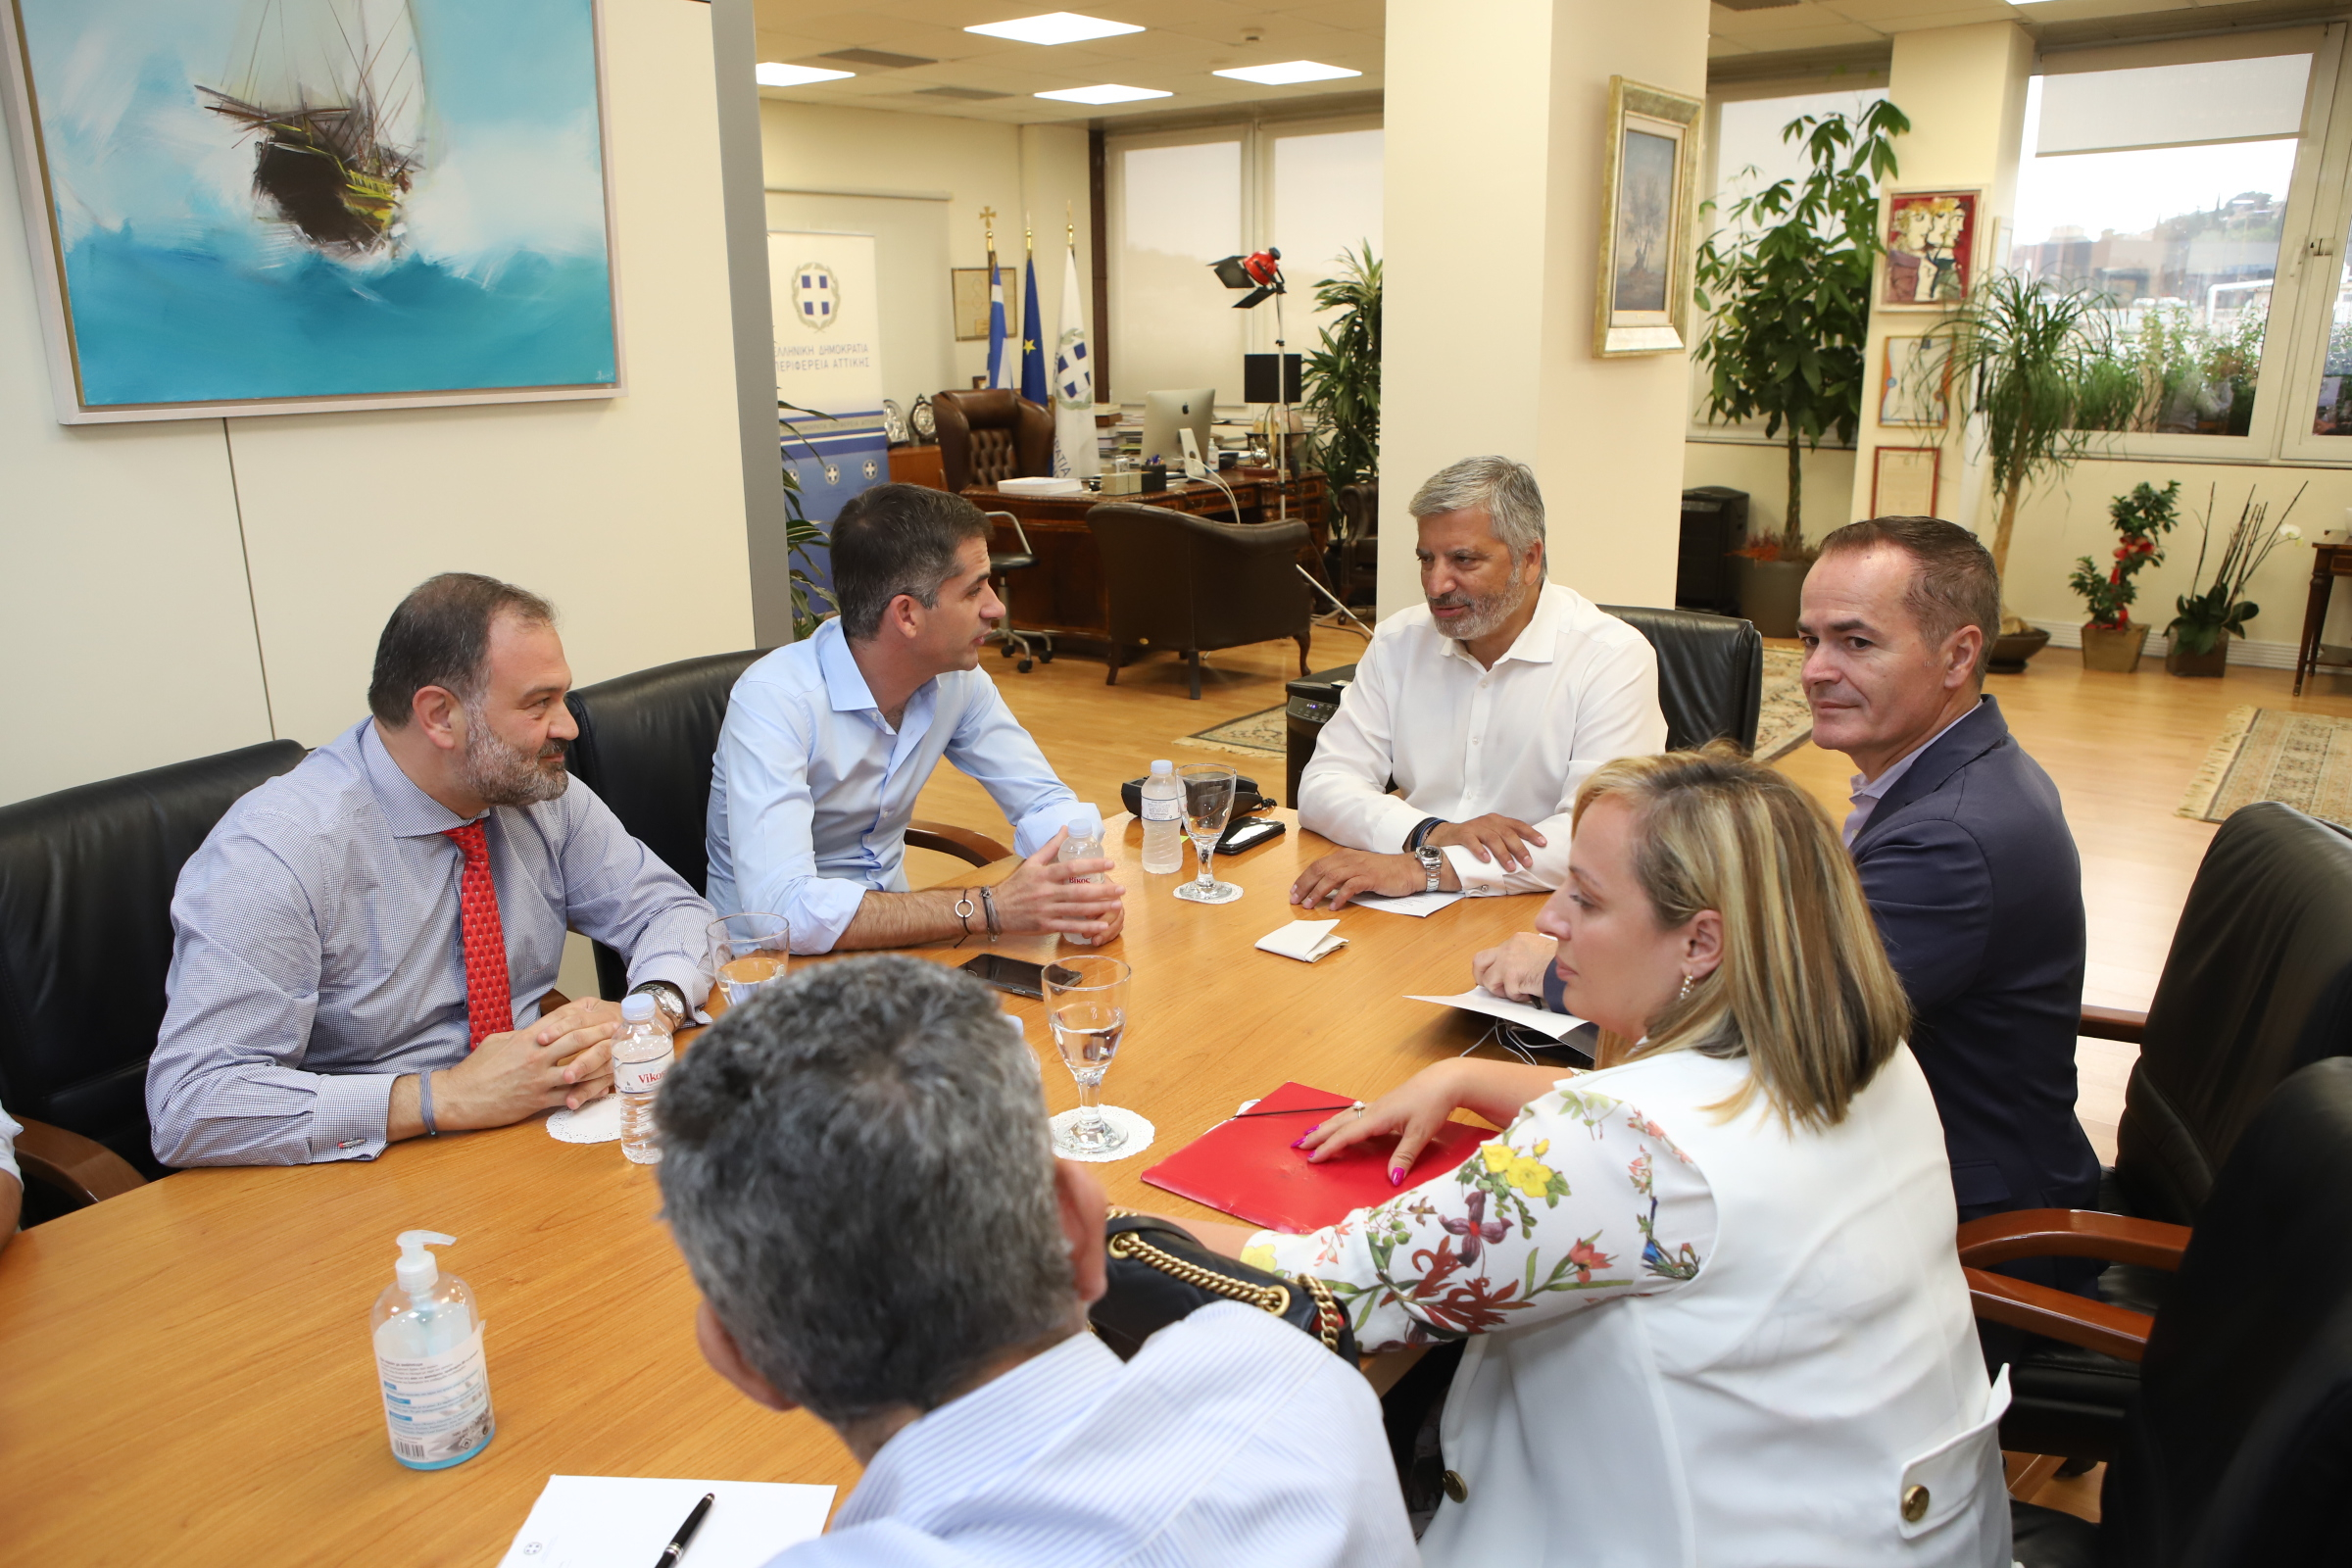 Συνάντηση του Περιφερειάρχη Αττικής Γ. Πατούλη με τον Δήμαρχο Αθηναίων Κ. Μπακογιάννη, στα γραφεία της Περιφέρειας για το Μεγάλο Περίπατο